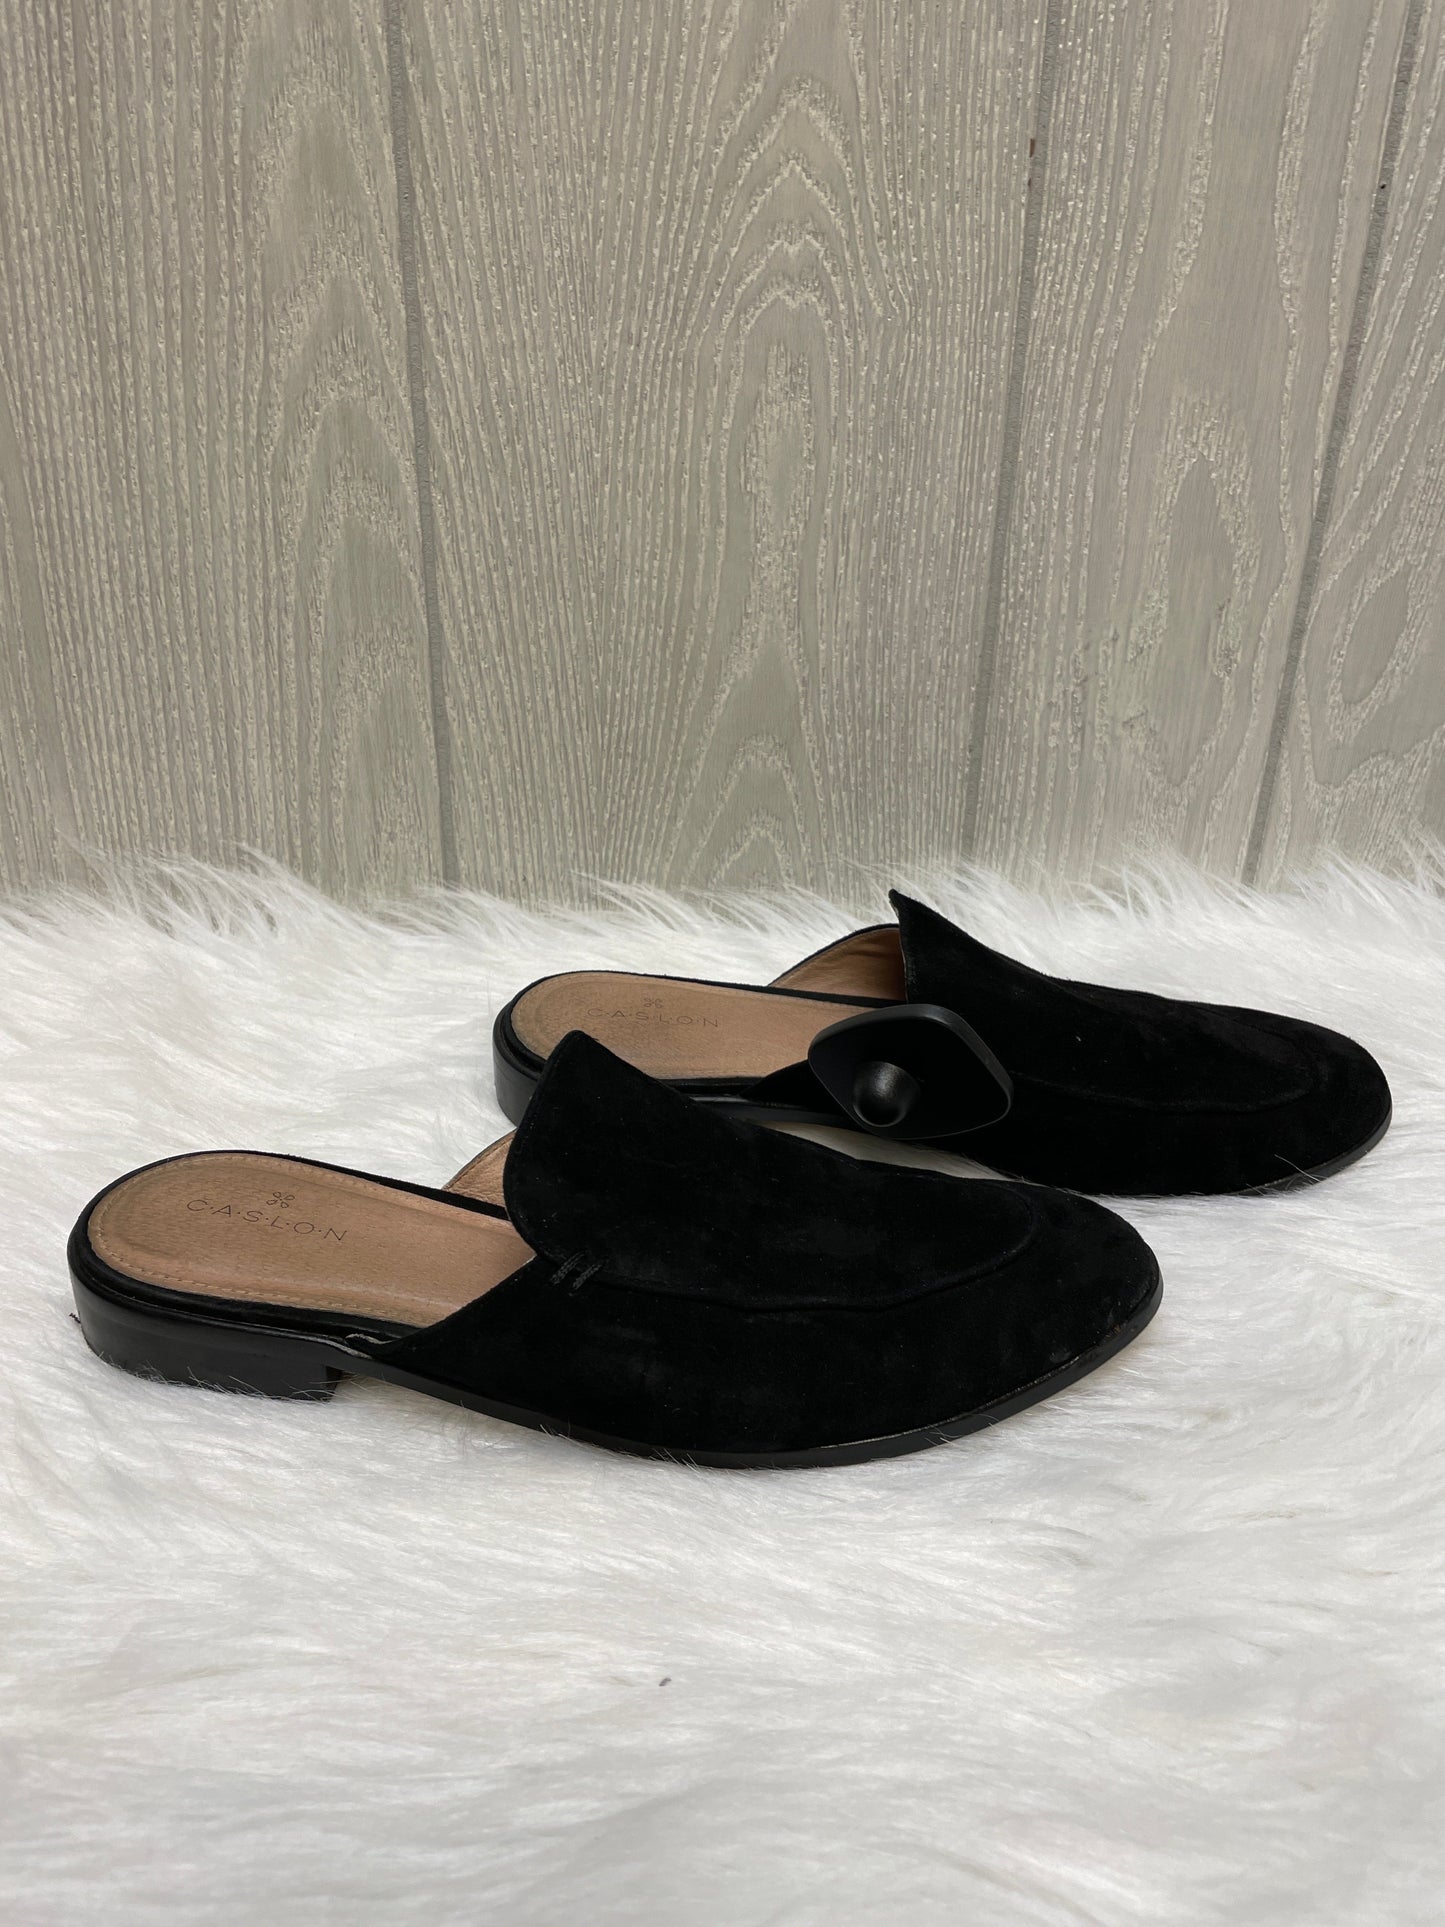 Black Shoes Flats Caslon, Size 6.5